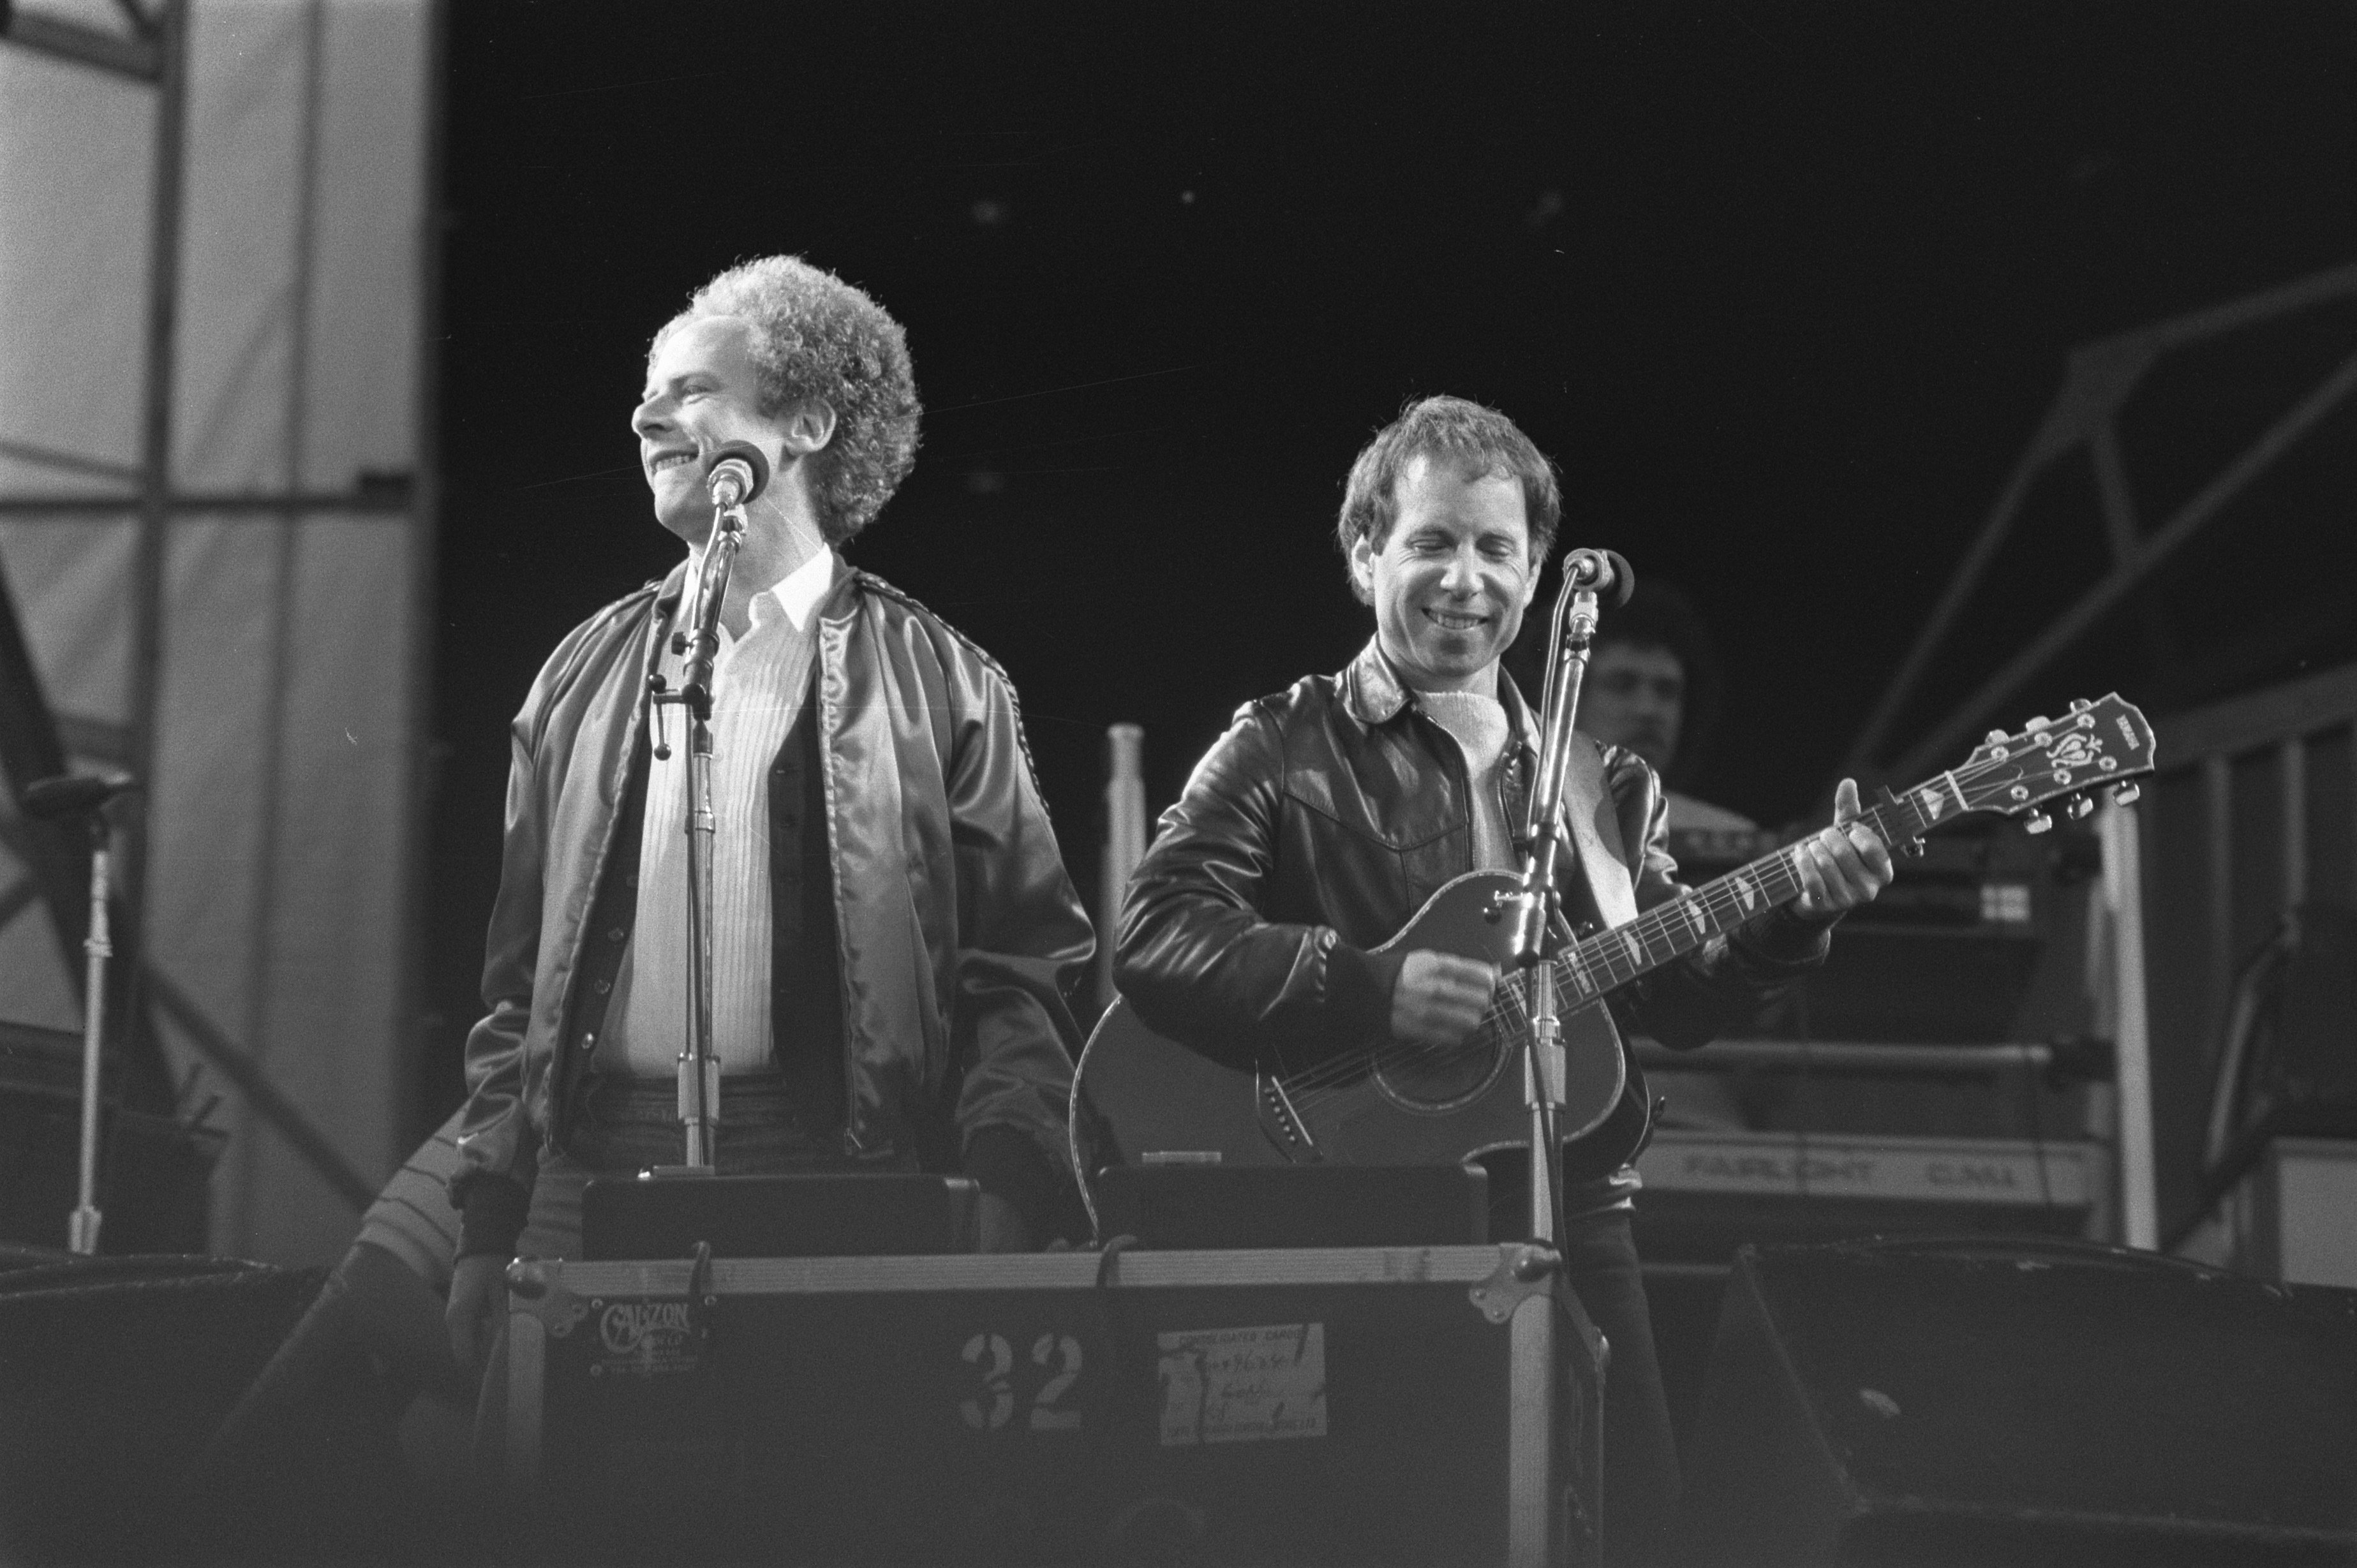 Simon & Garfunkel perform onstage